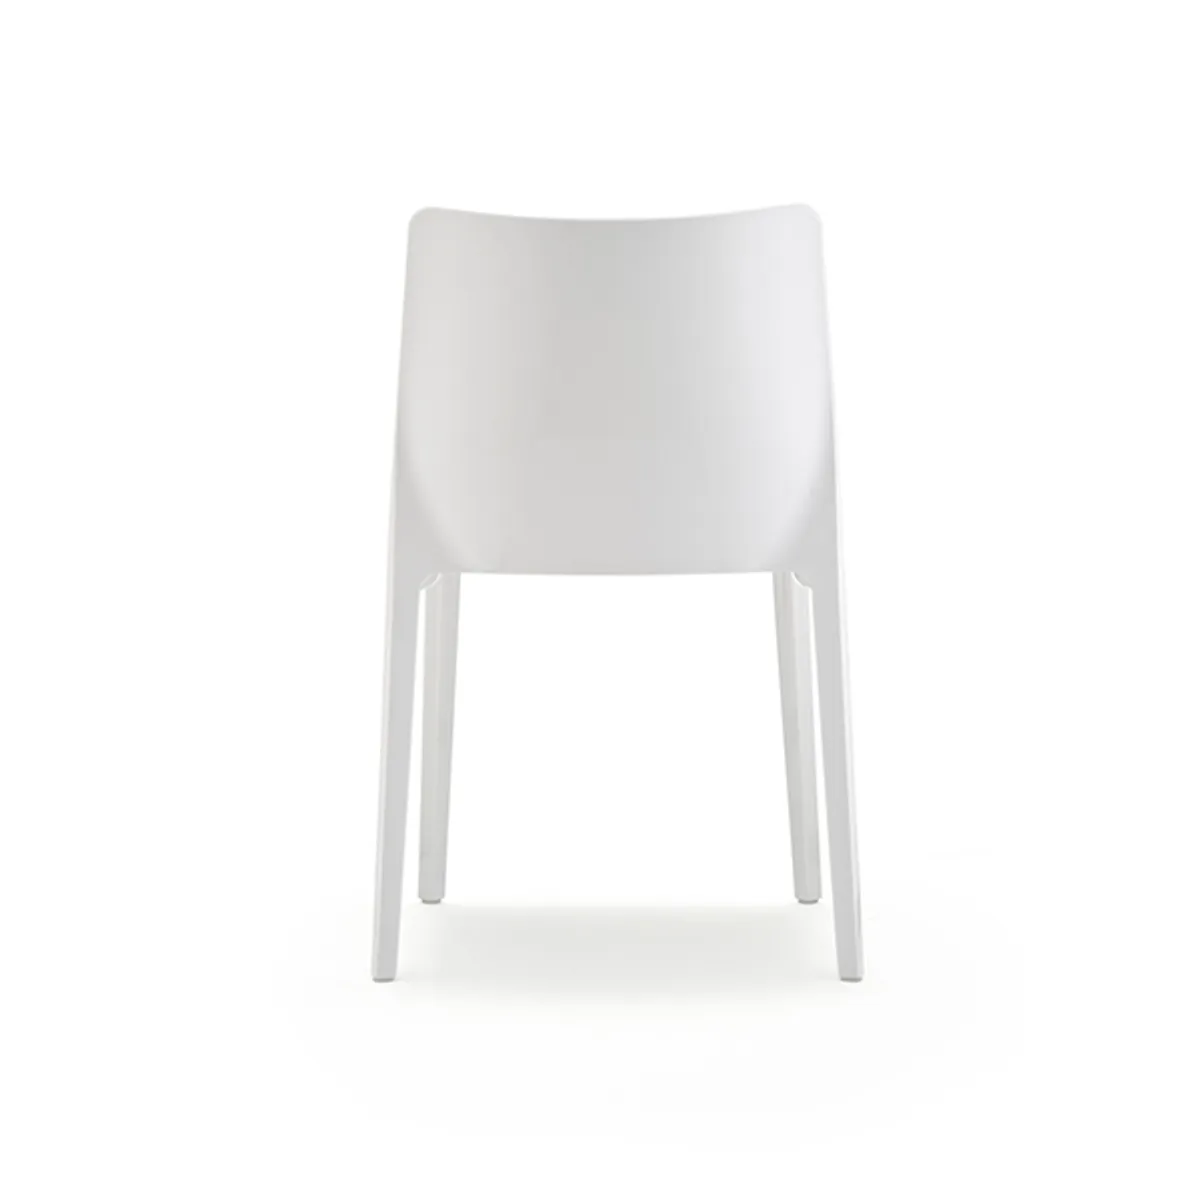 Web Blitz White Opaque Chair